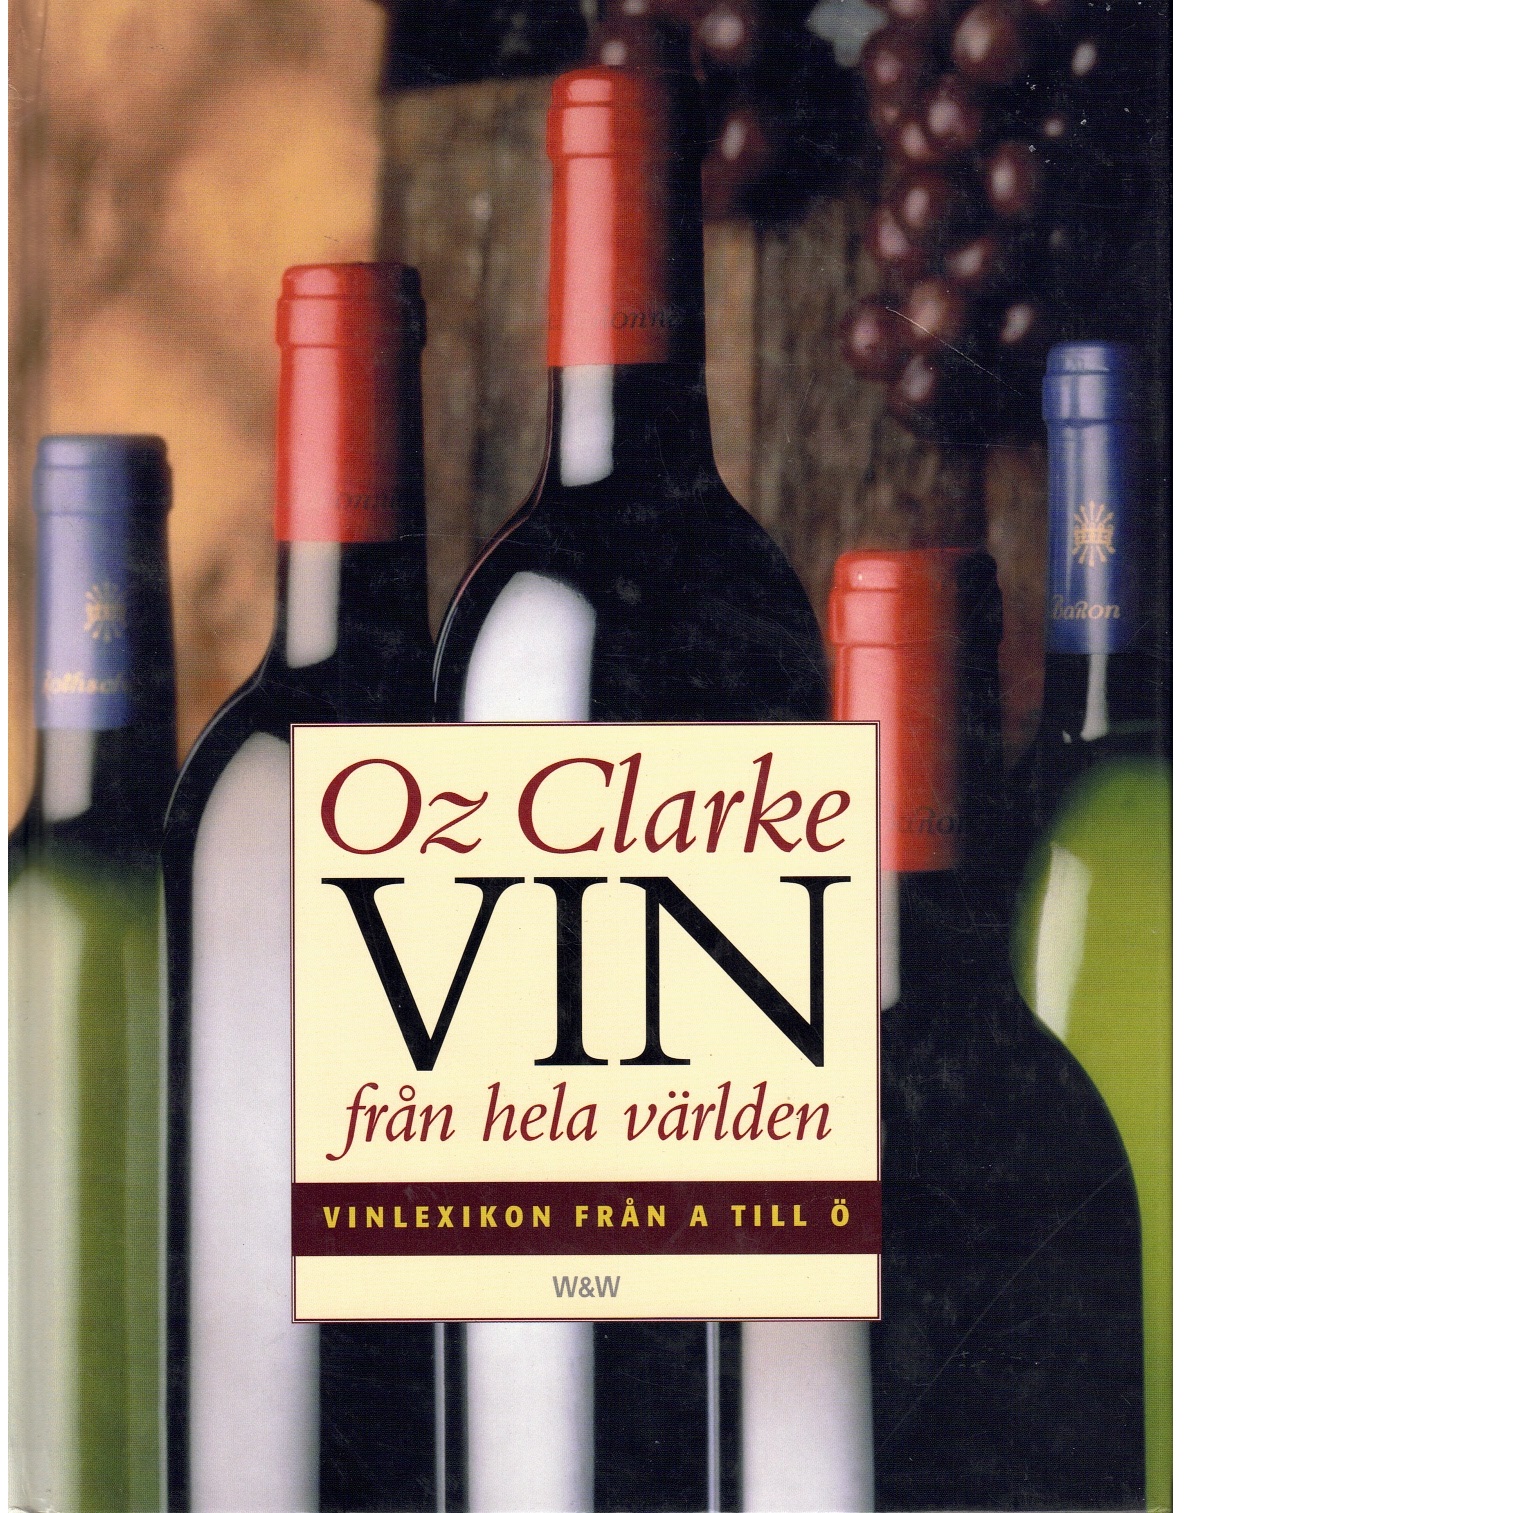 Vin från hela världen : vinlexikon från A till Ö - Clarke, Oz